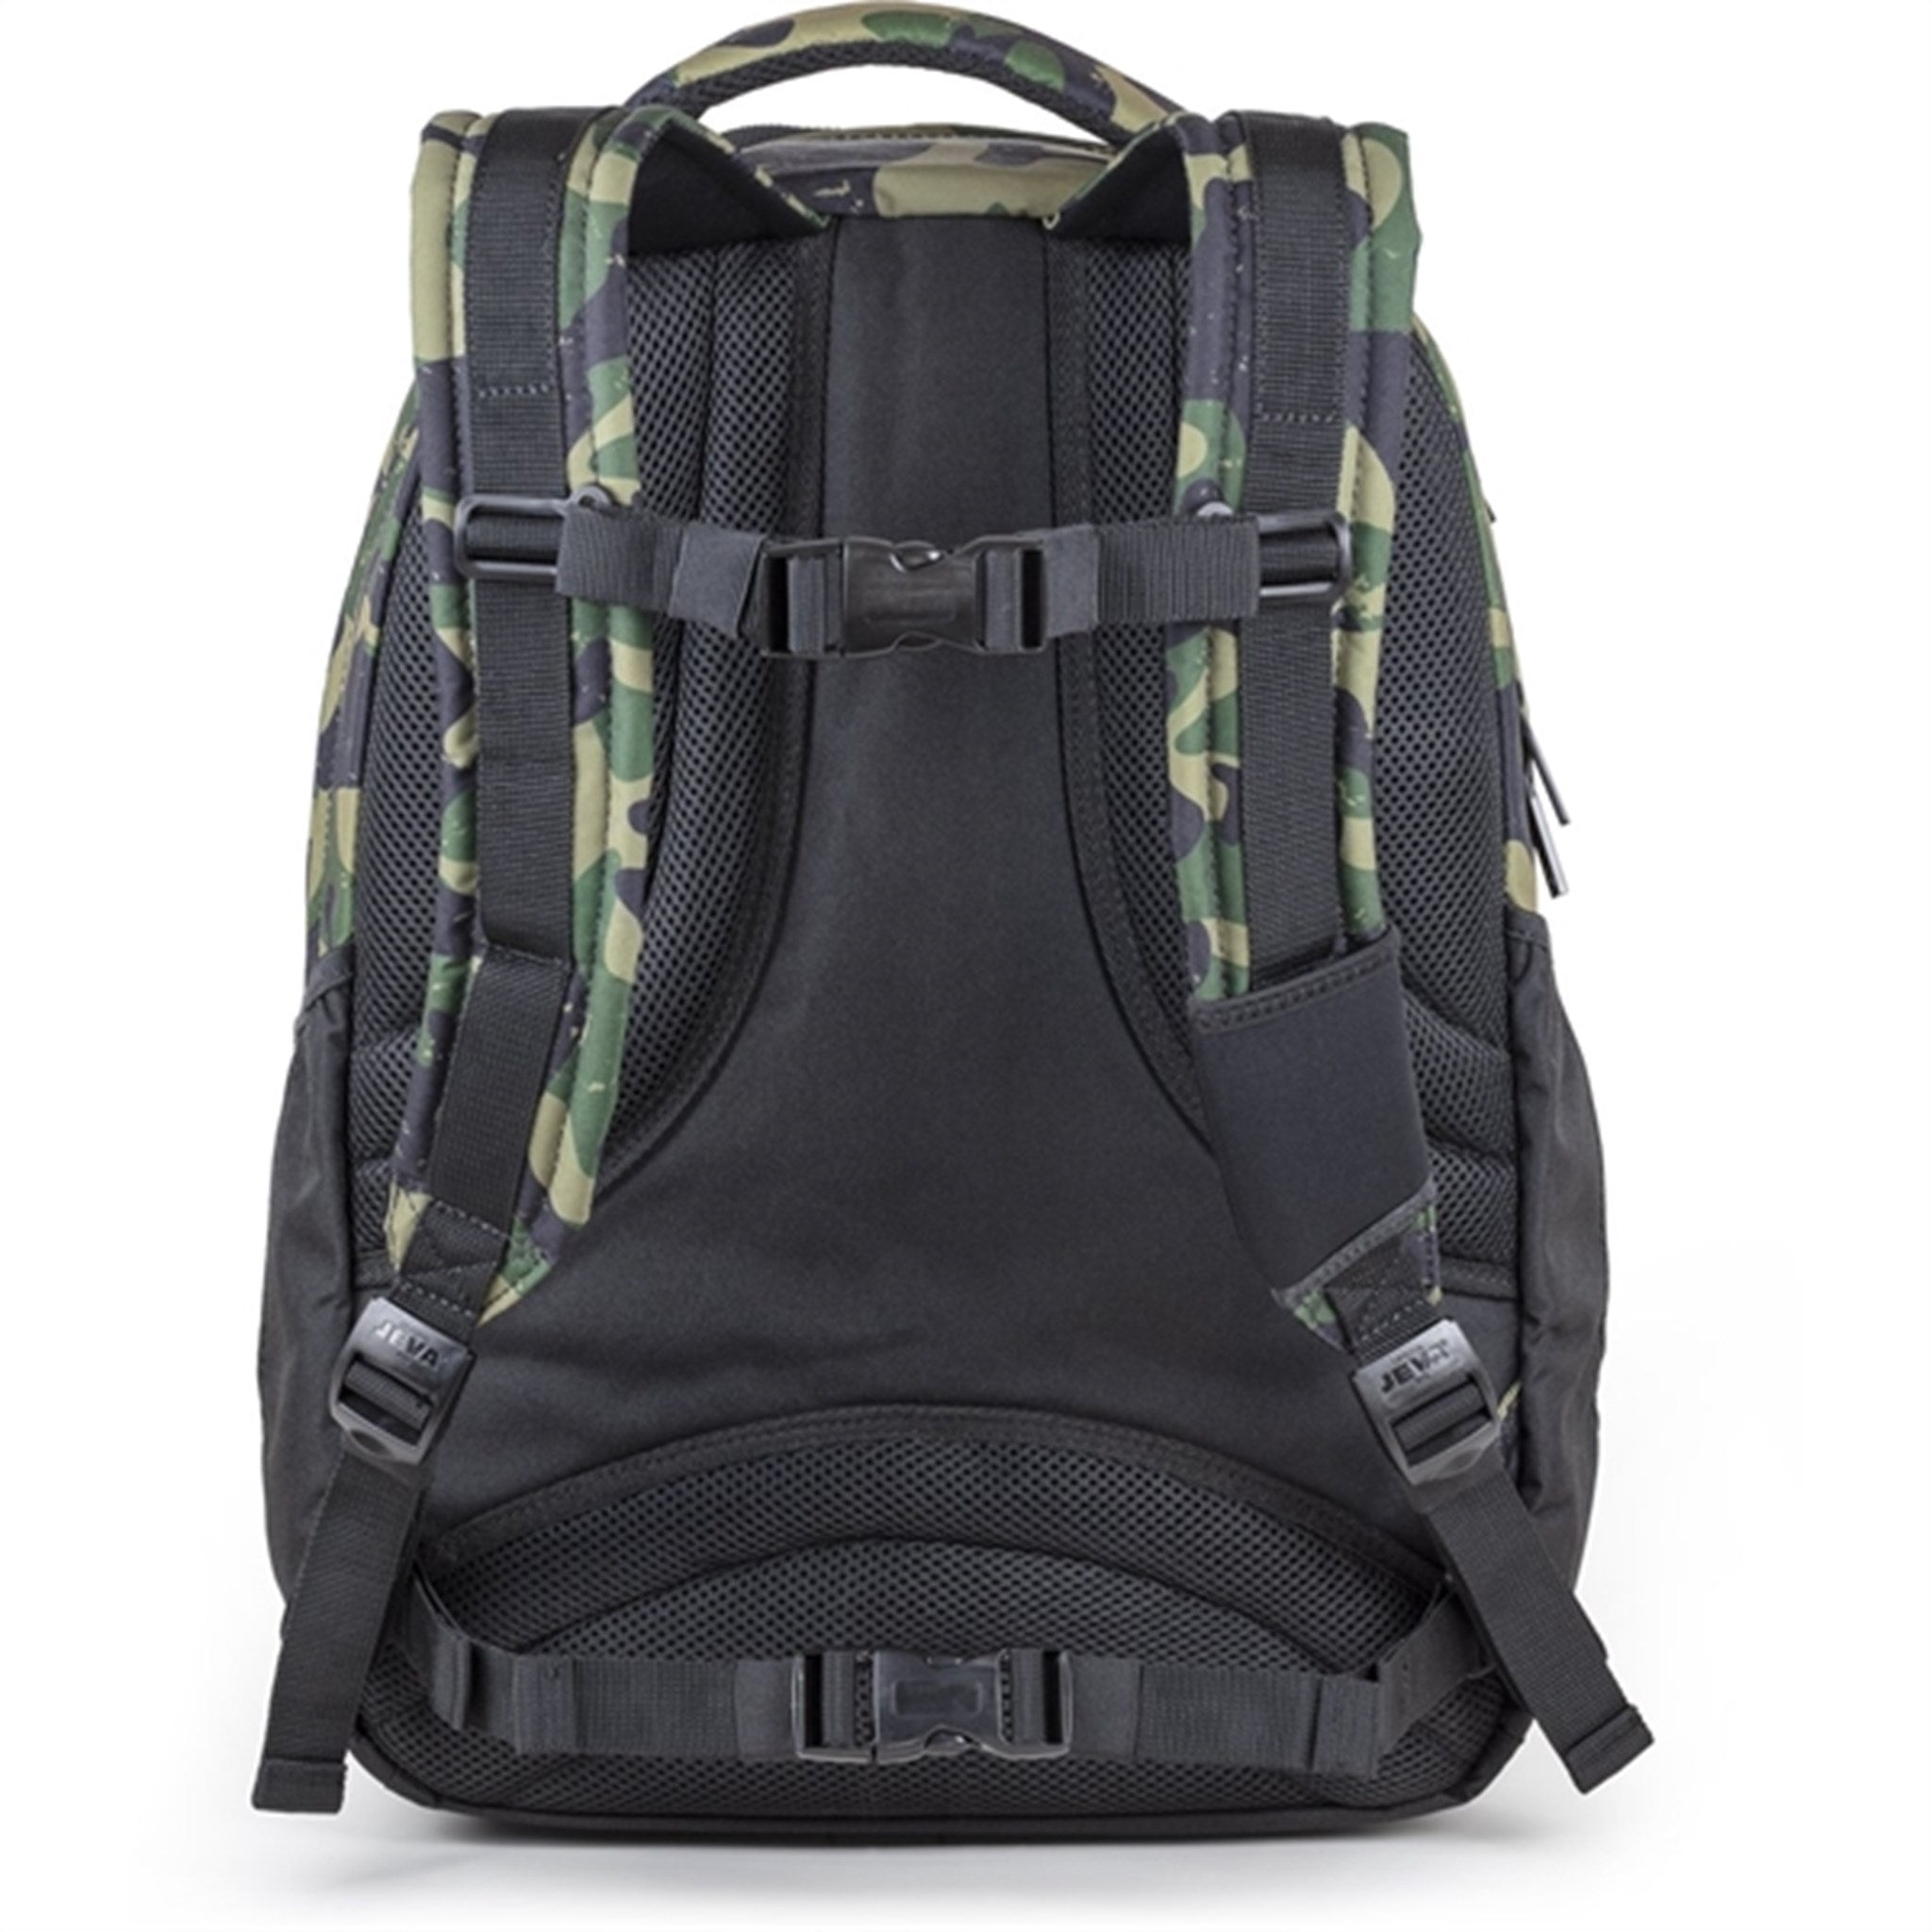 JEVA Backpack Green Camou 6